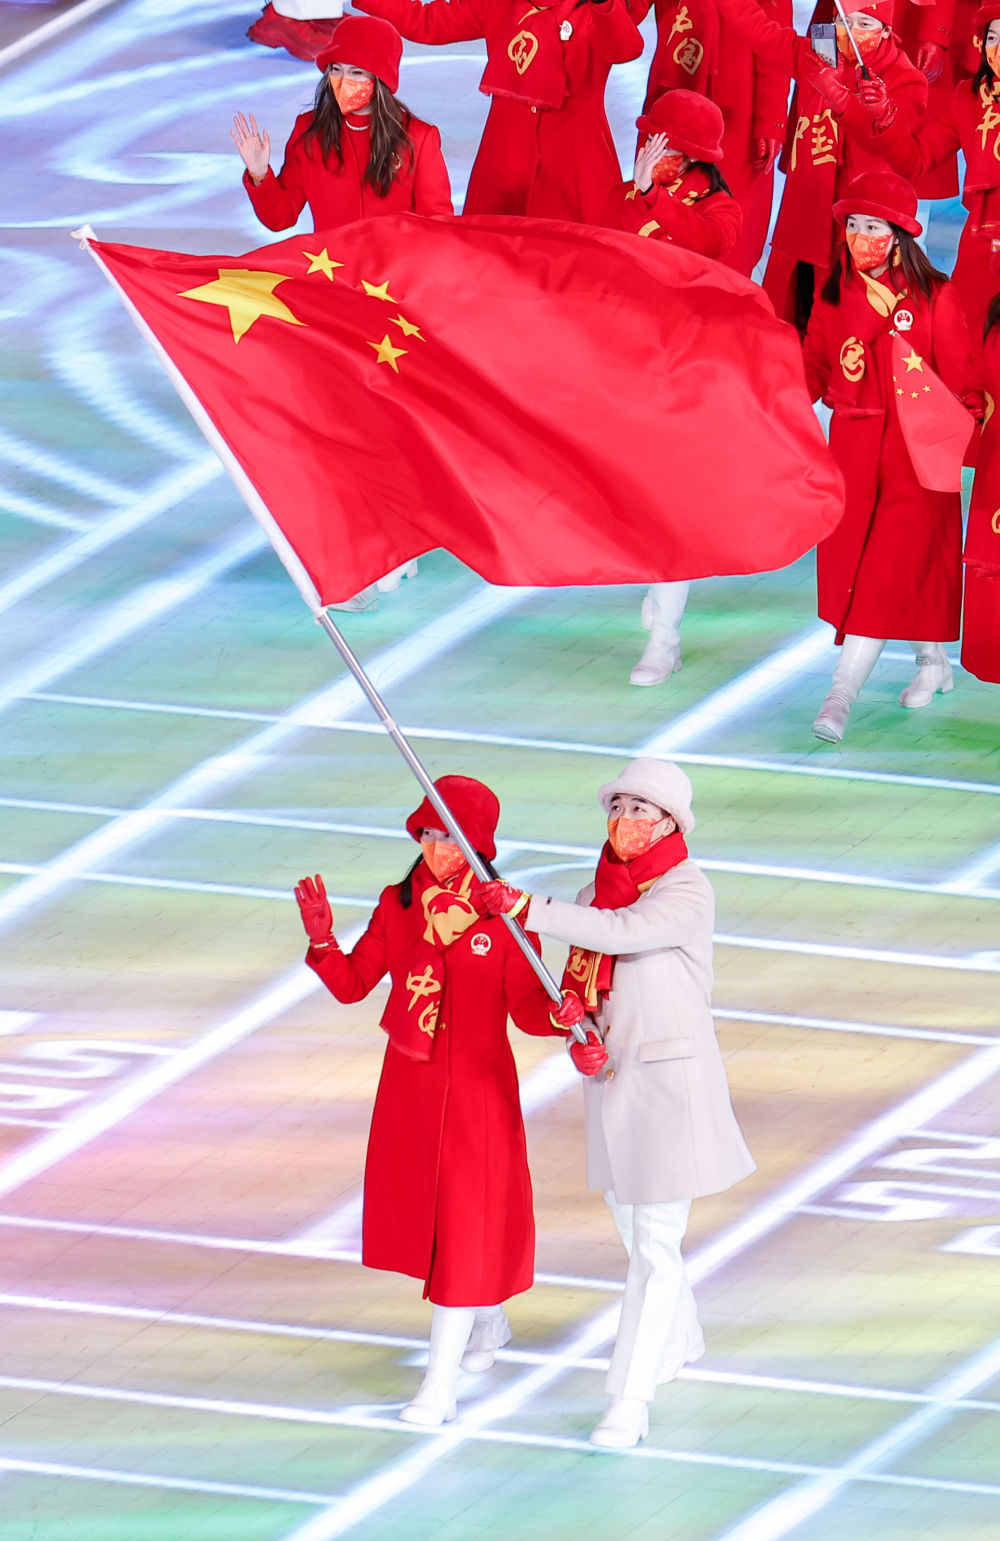 冬奥会开幕式中国入场图片